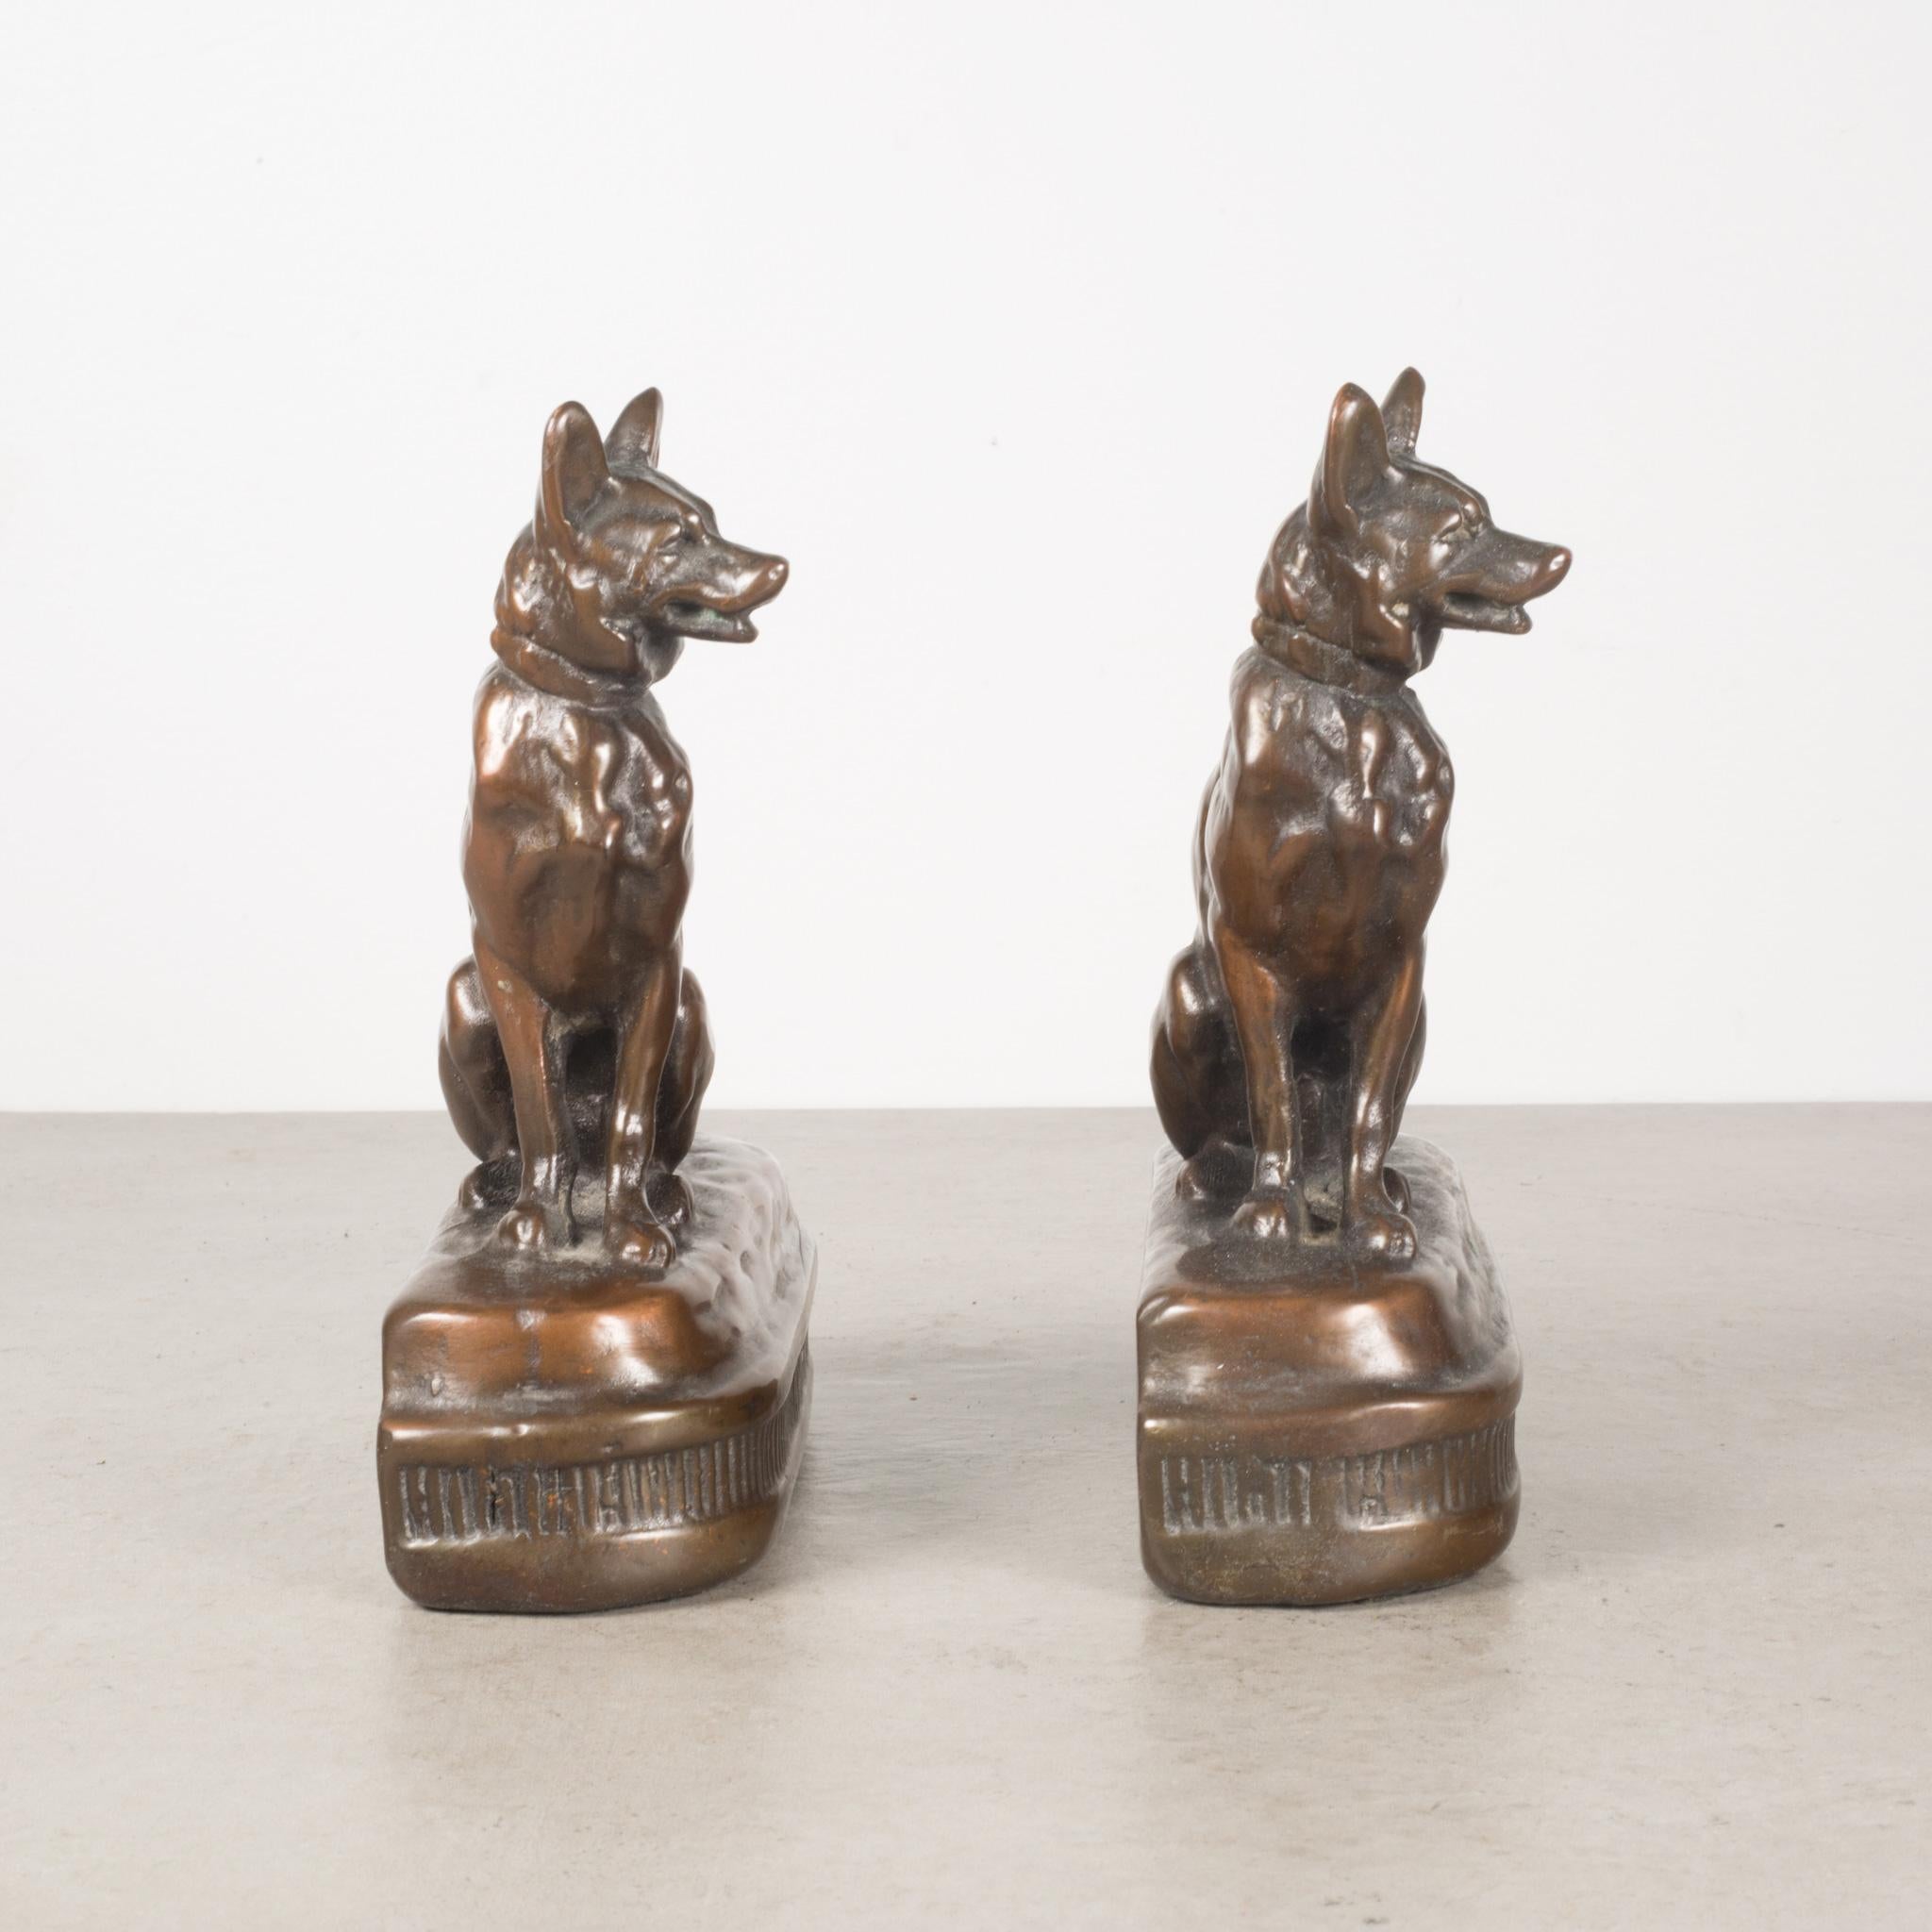 American Bronze Cast German Shepherd Bookends by Armor Bronze, C.1930